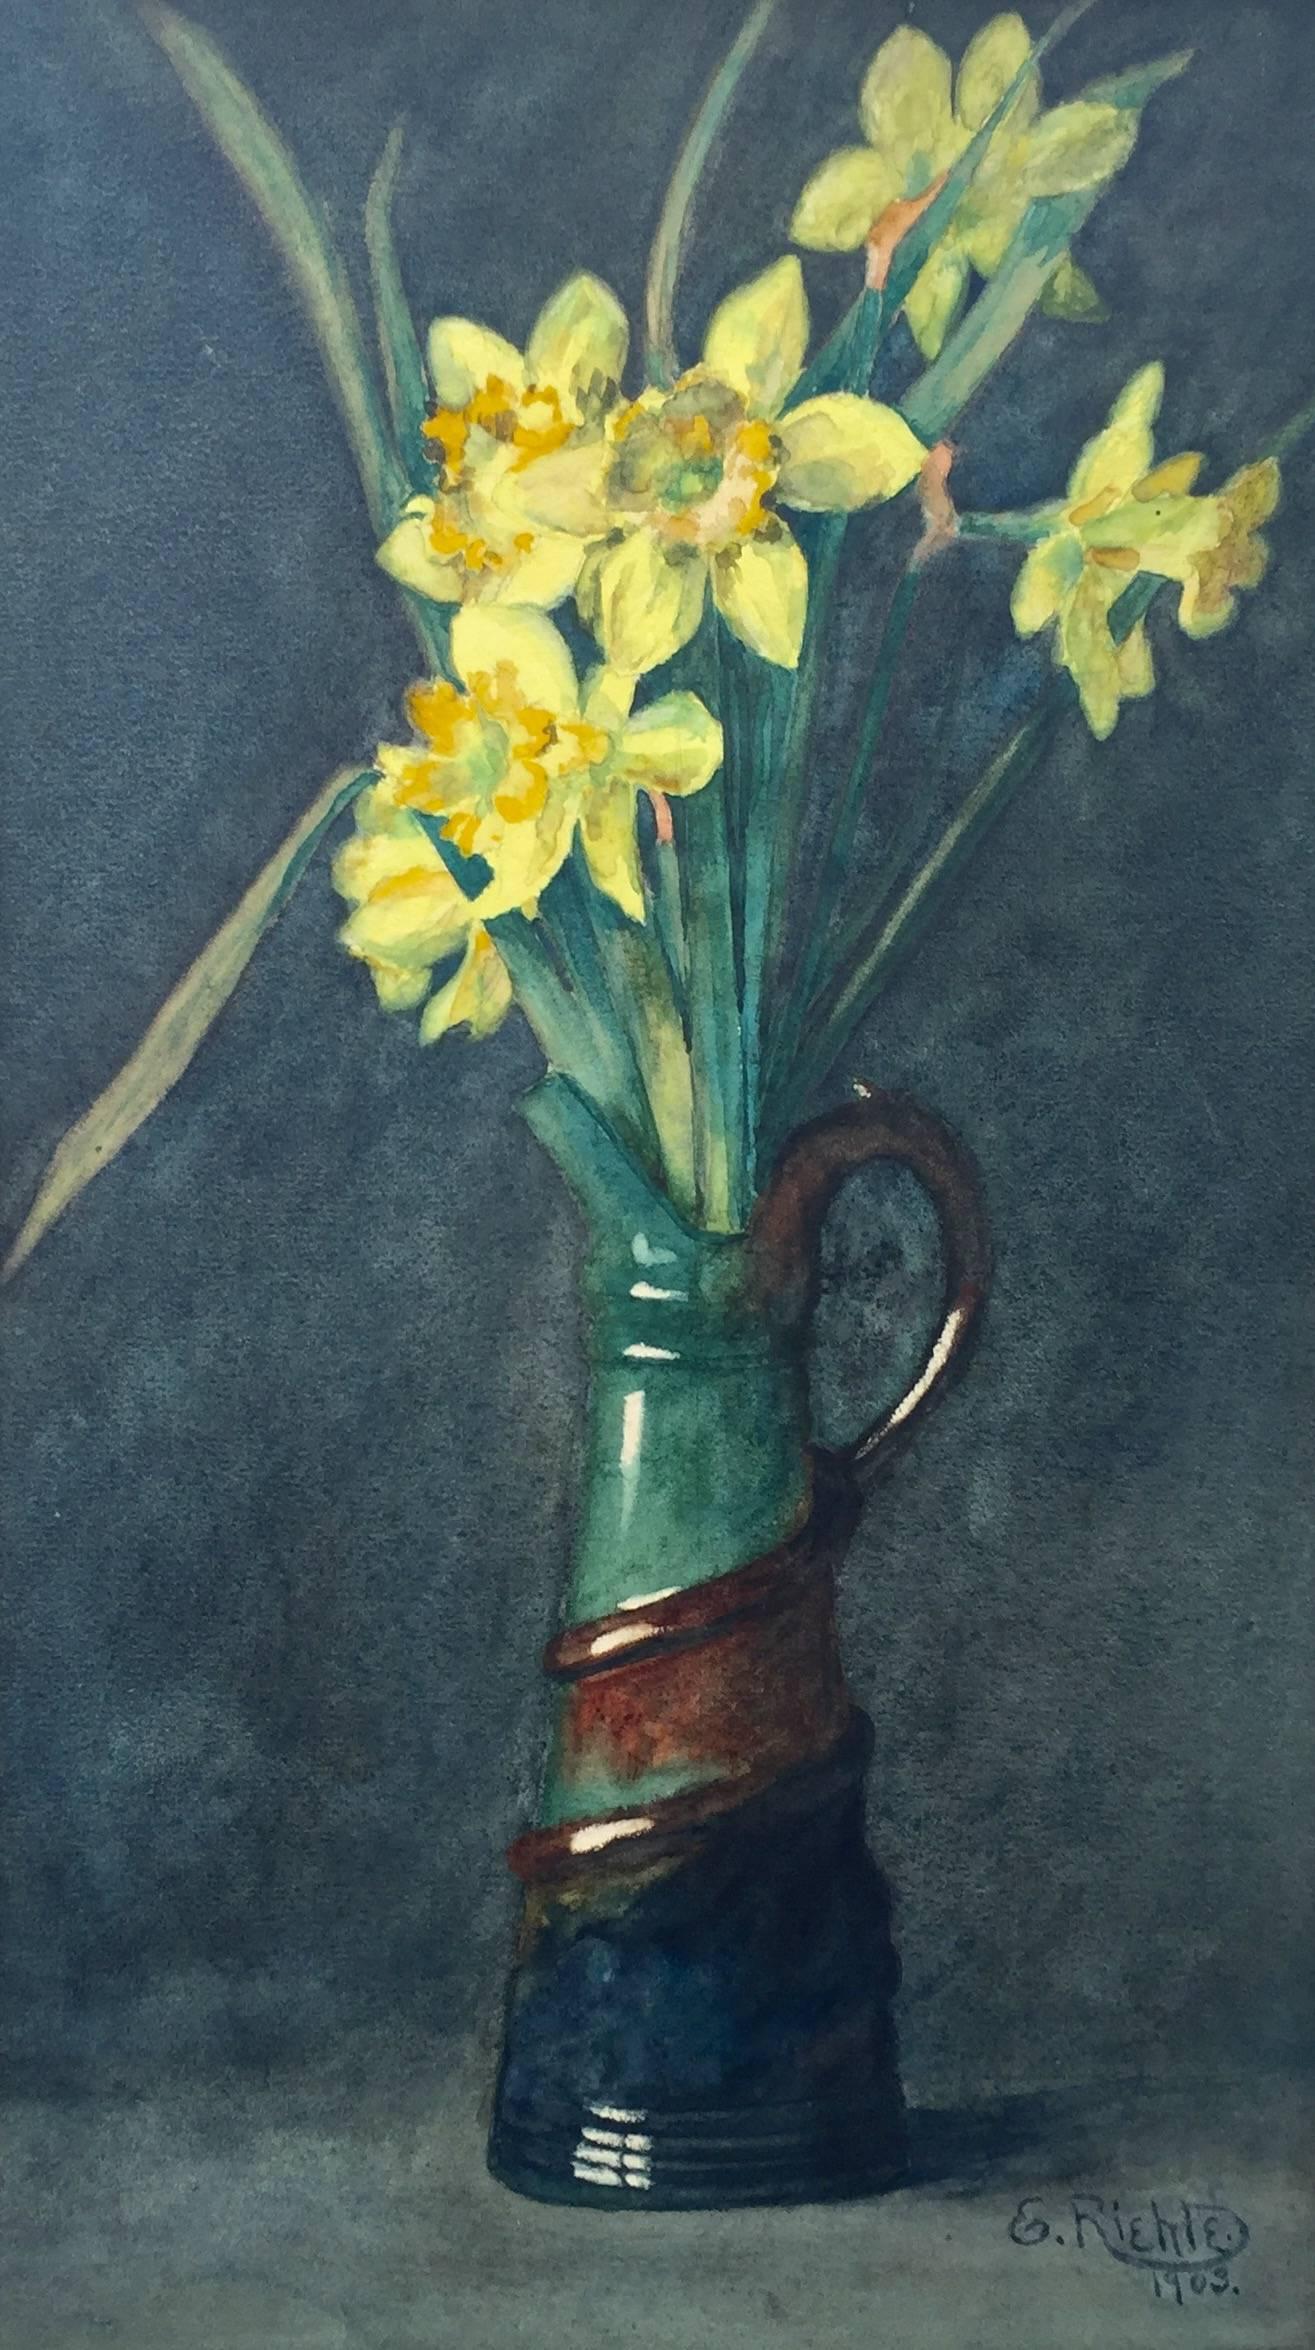 "Daffodils in Ceramic Pitcher"